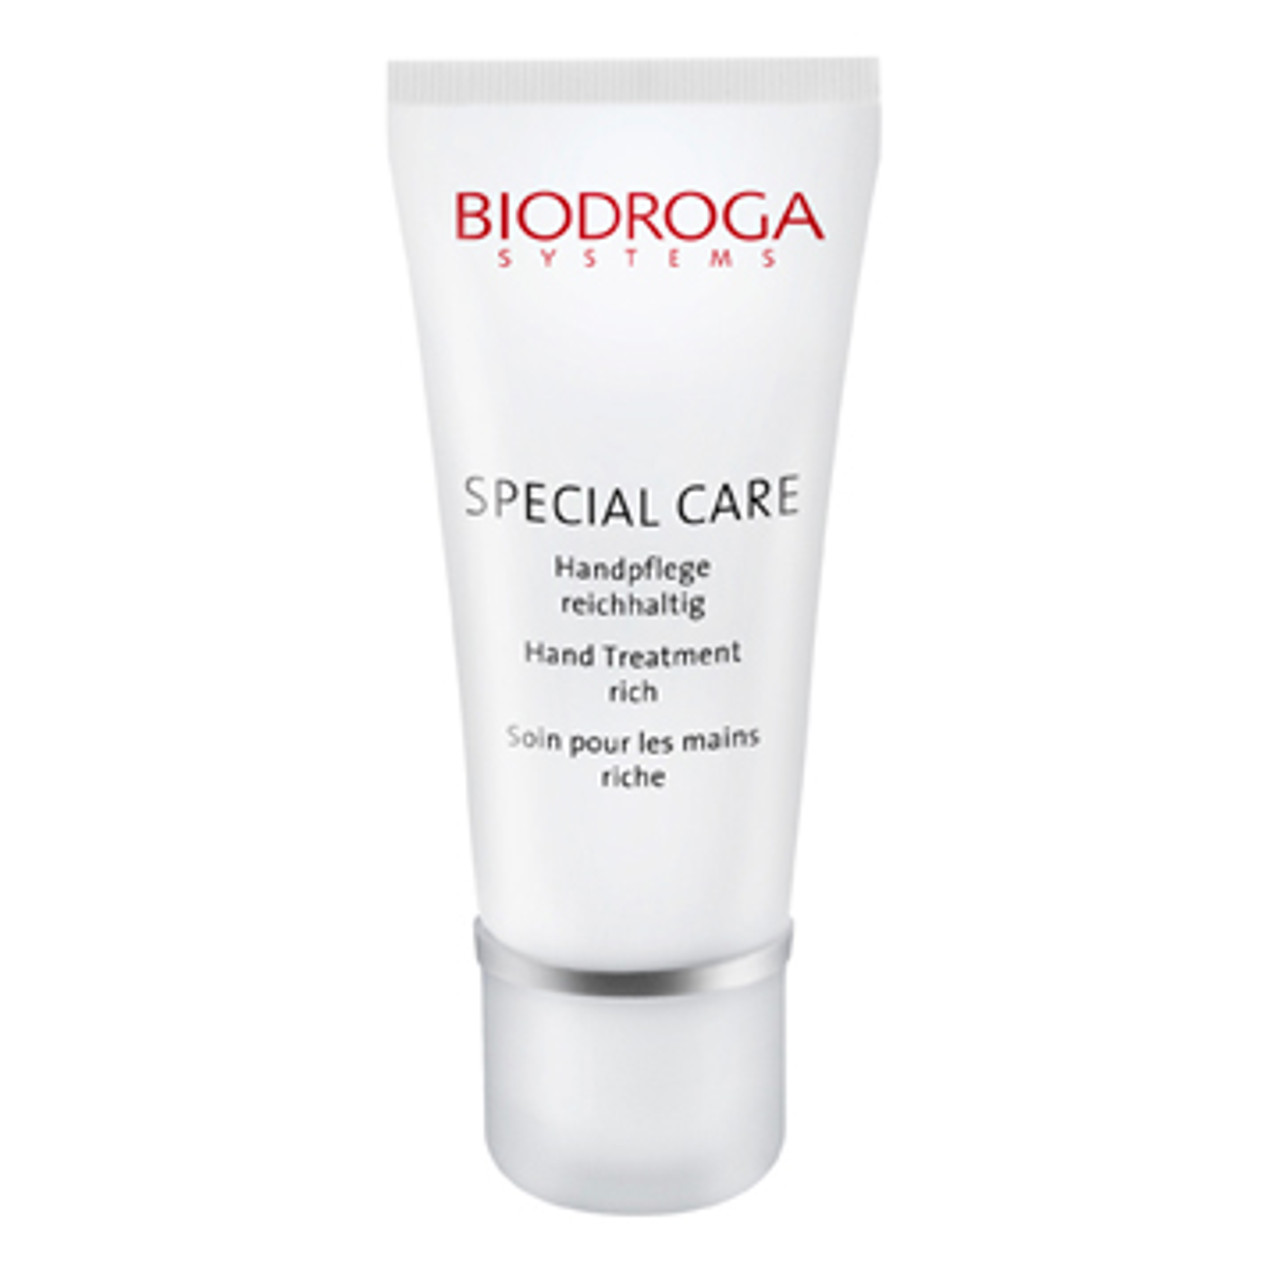 Biodroga Special Care Hand Treatment Cream - 2.7 oz